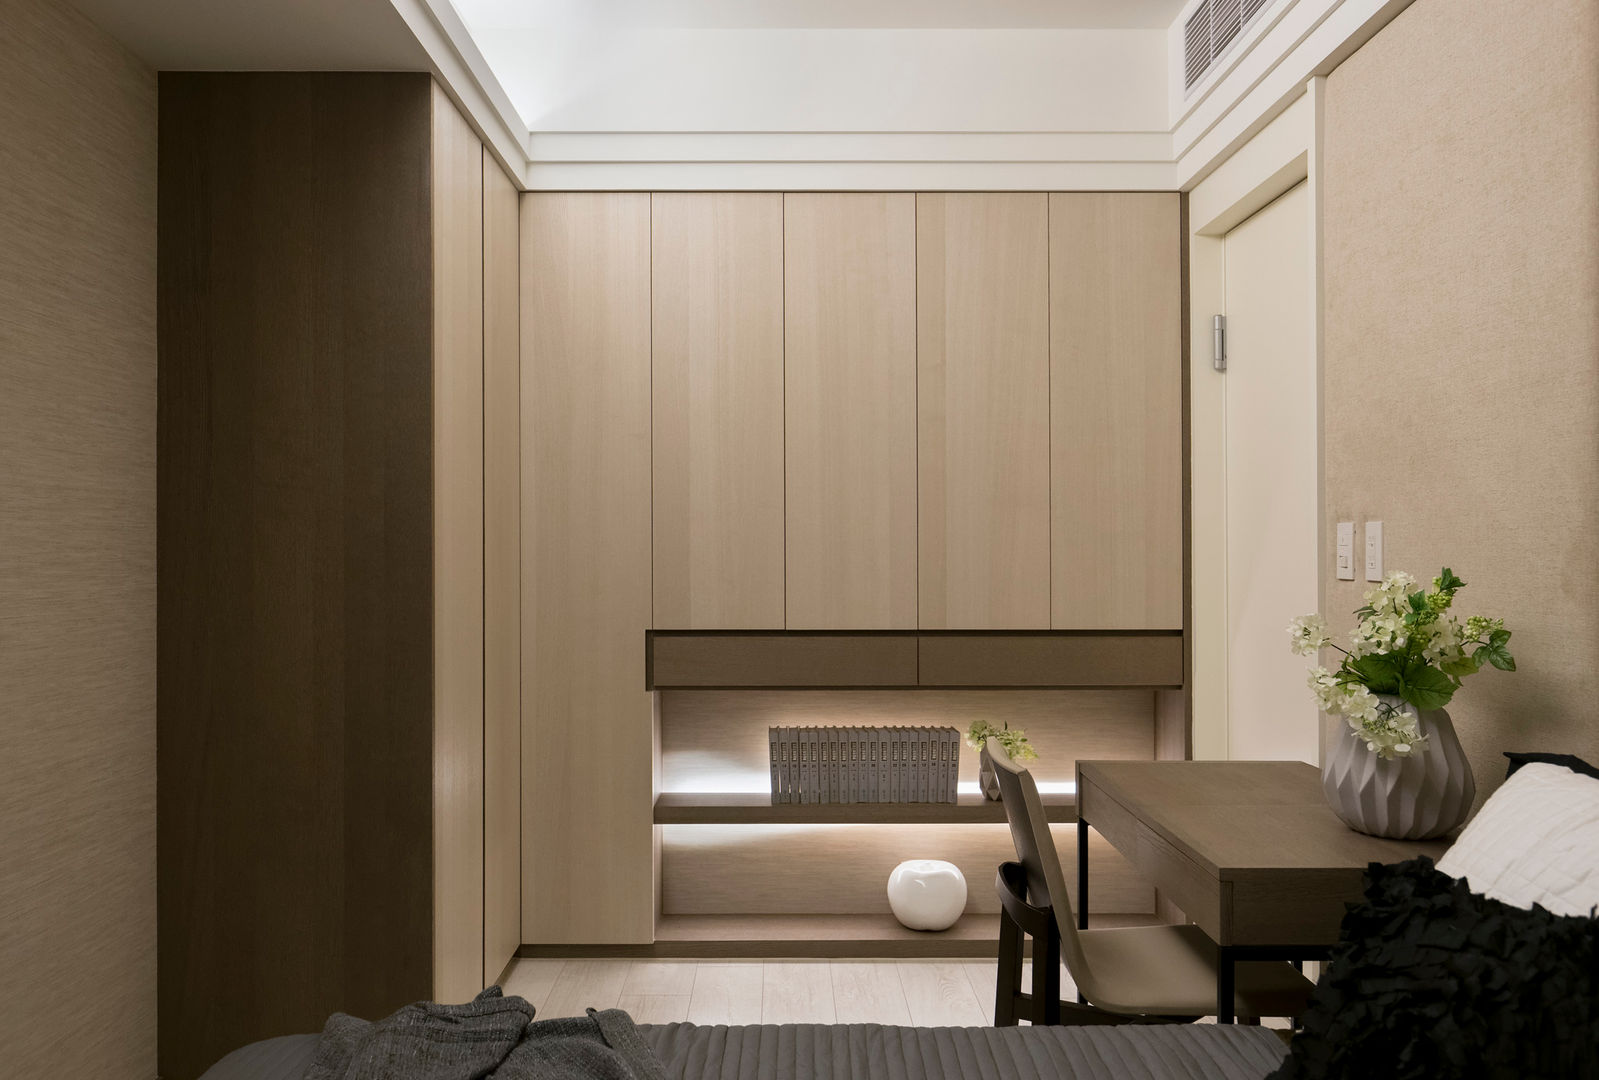 私宅-綠溢, 思為設計 SW Design 思為設計 SW Design Dormitorios escandinavos